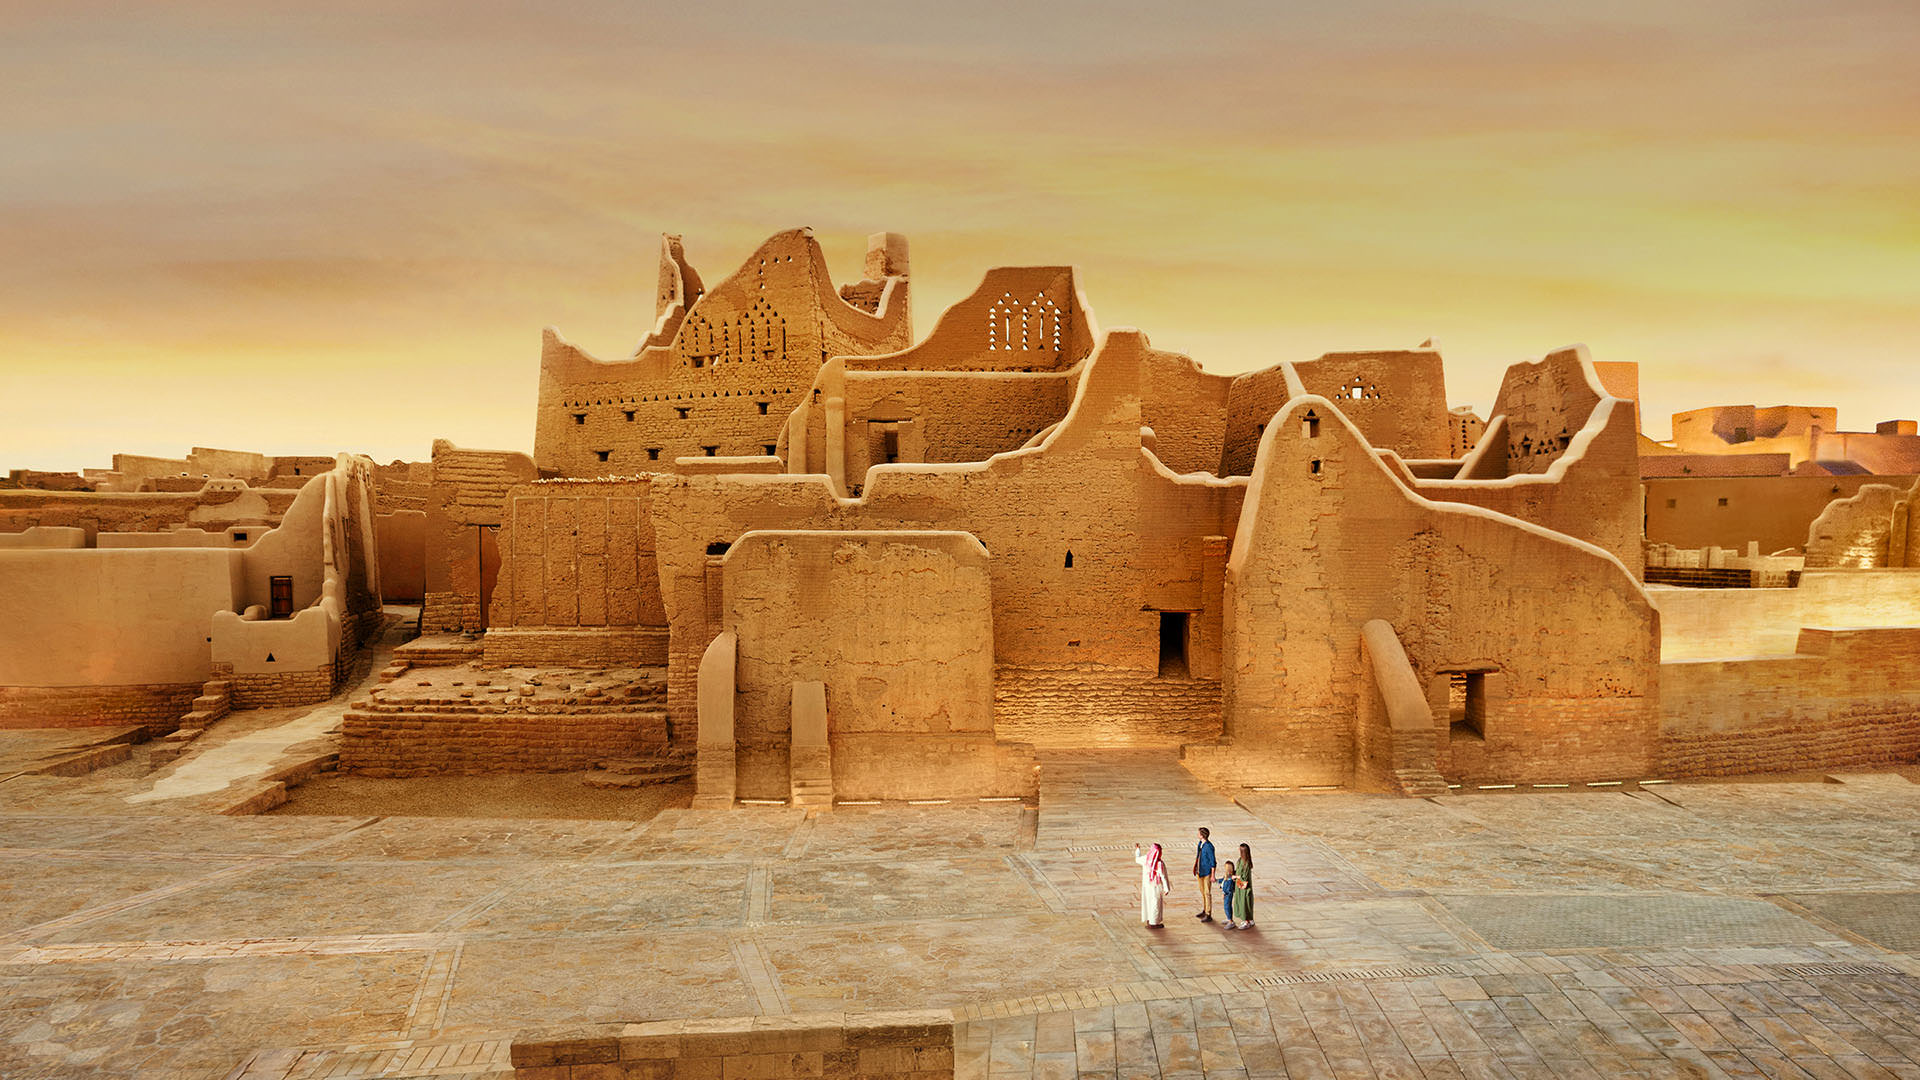 Top 5 cities to explore in Saudi Arabia 01 sta diriyah at turaif